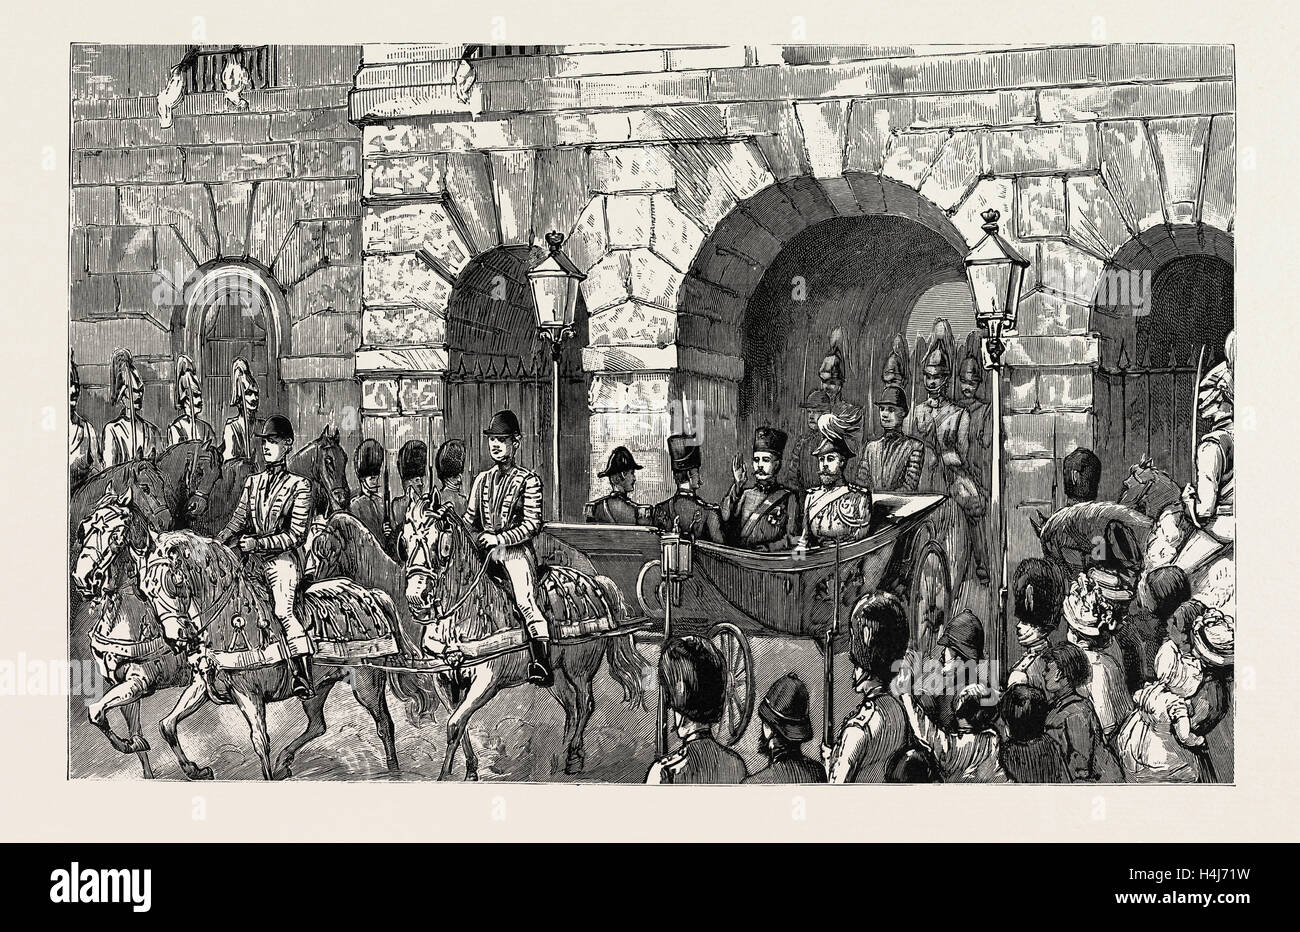 Le shah de Perse EN ANGLETERRE : LA PROCESSION PASSANT PAR LA CAVALERIE DE LA GARDE SUR LE CHEMIN DE Buckingham Palace, 1889, UK Banque D'Images